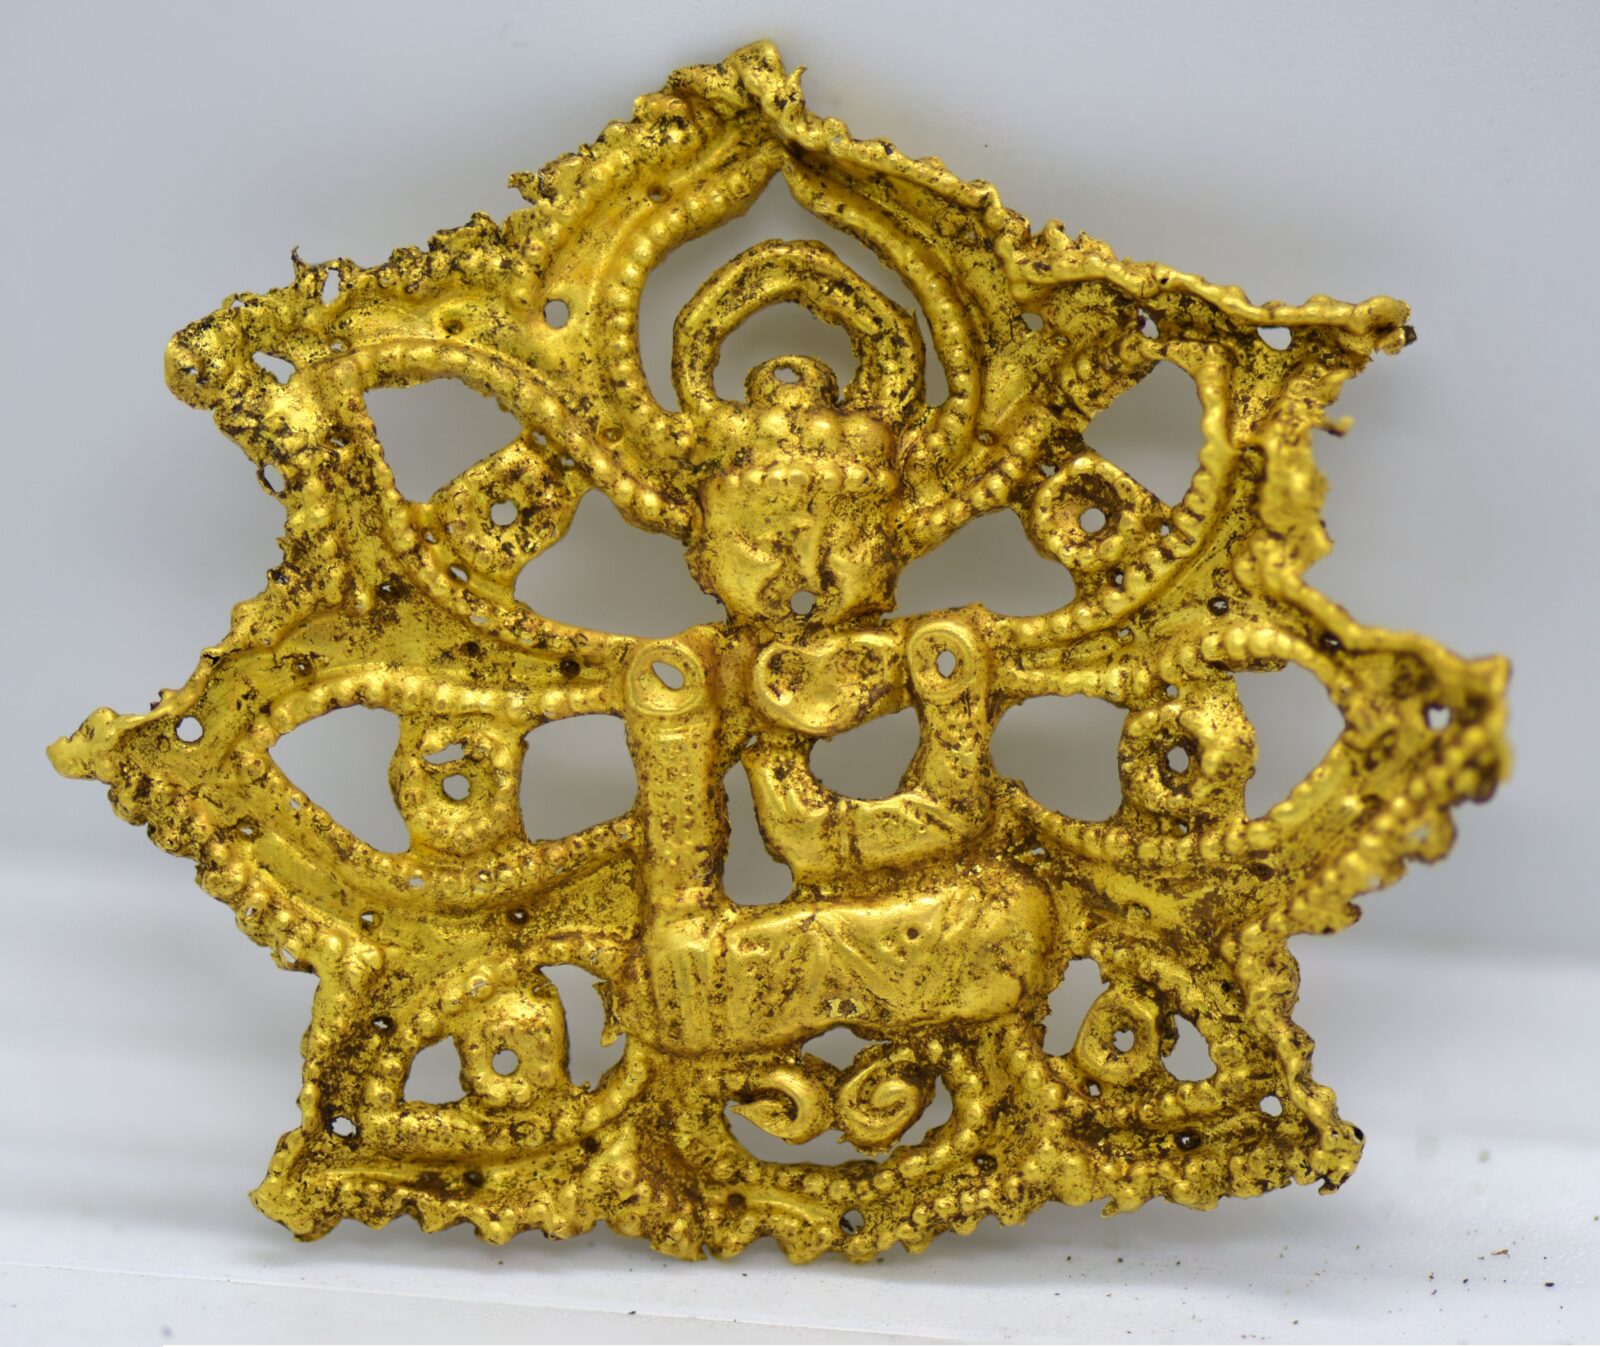 Khorig mezarlıklarından oturan bir Buda'yı çevreleyen nilüfer şeklinde altın bir süs.